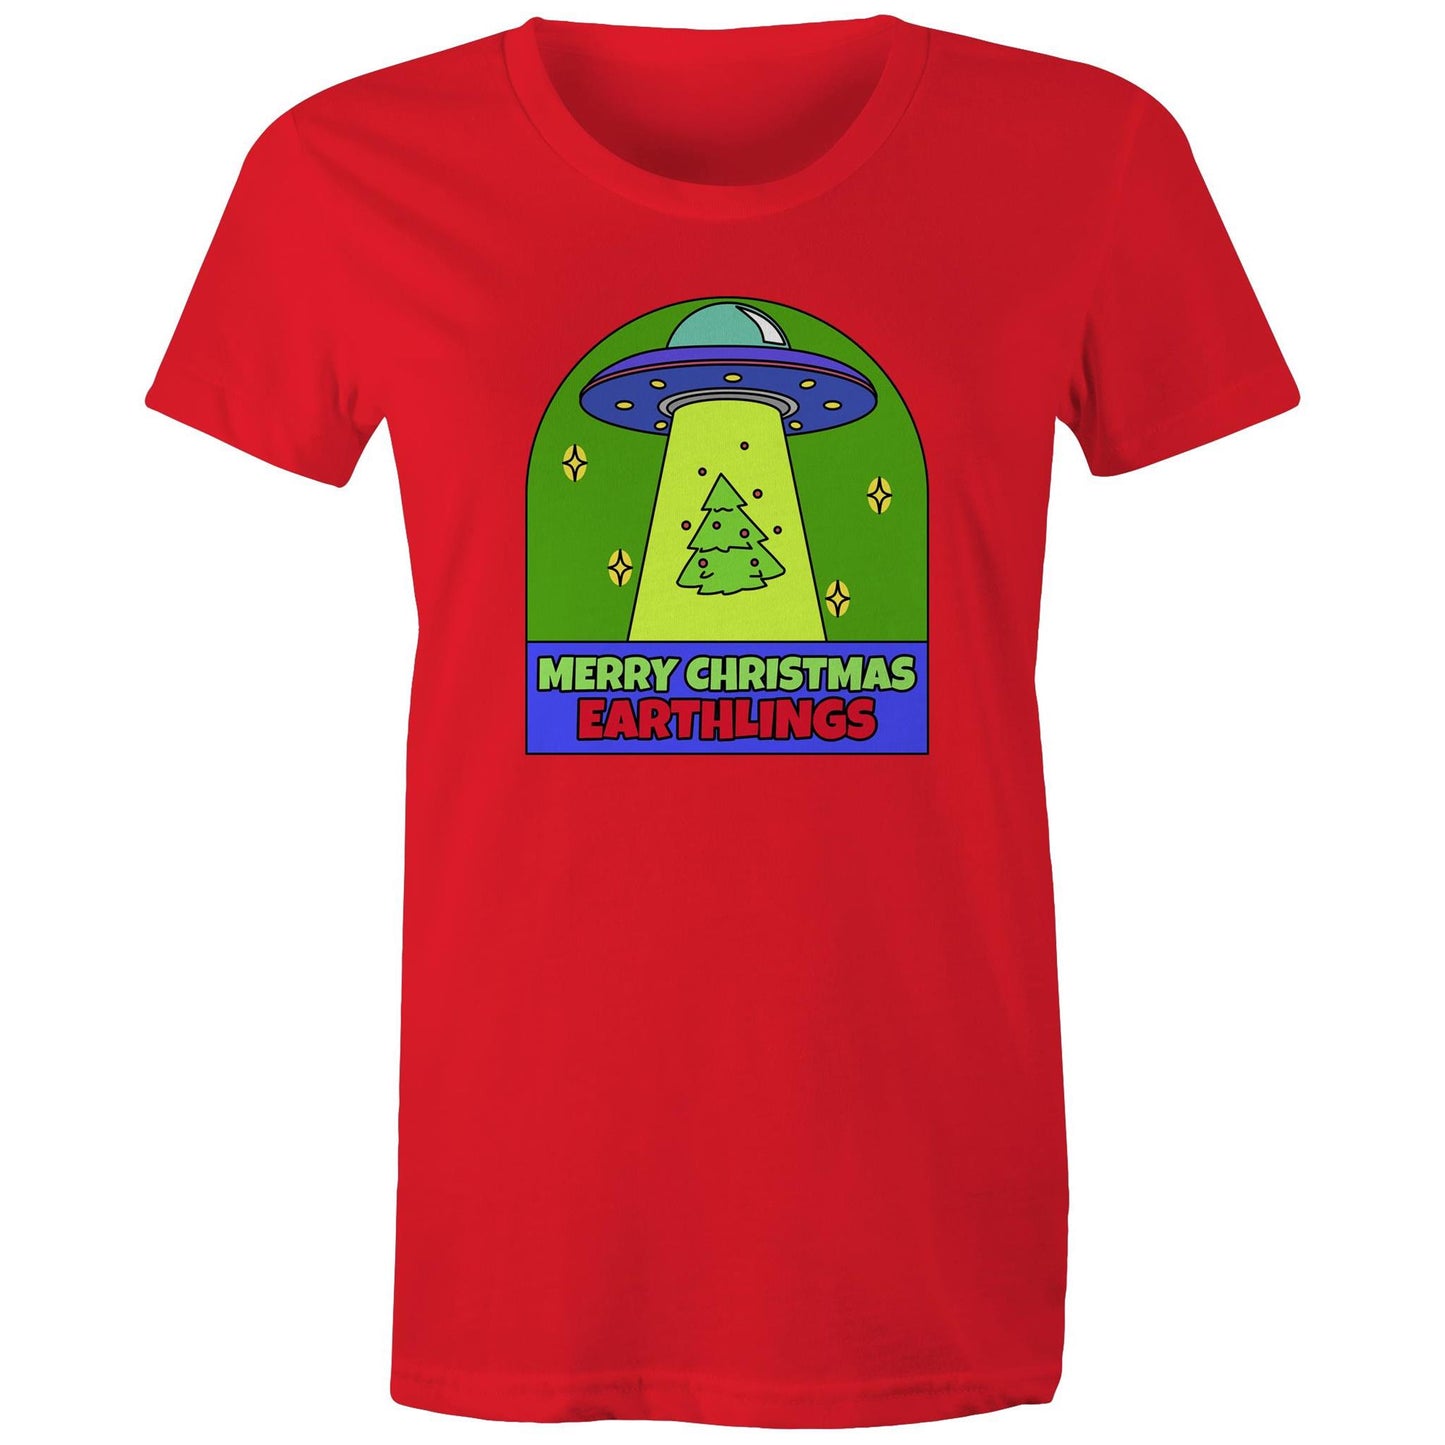 Merry Christmas Earthlings, UFO - Womens T-shirt Red Christmas Womens T-shirt Merry Christmas